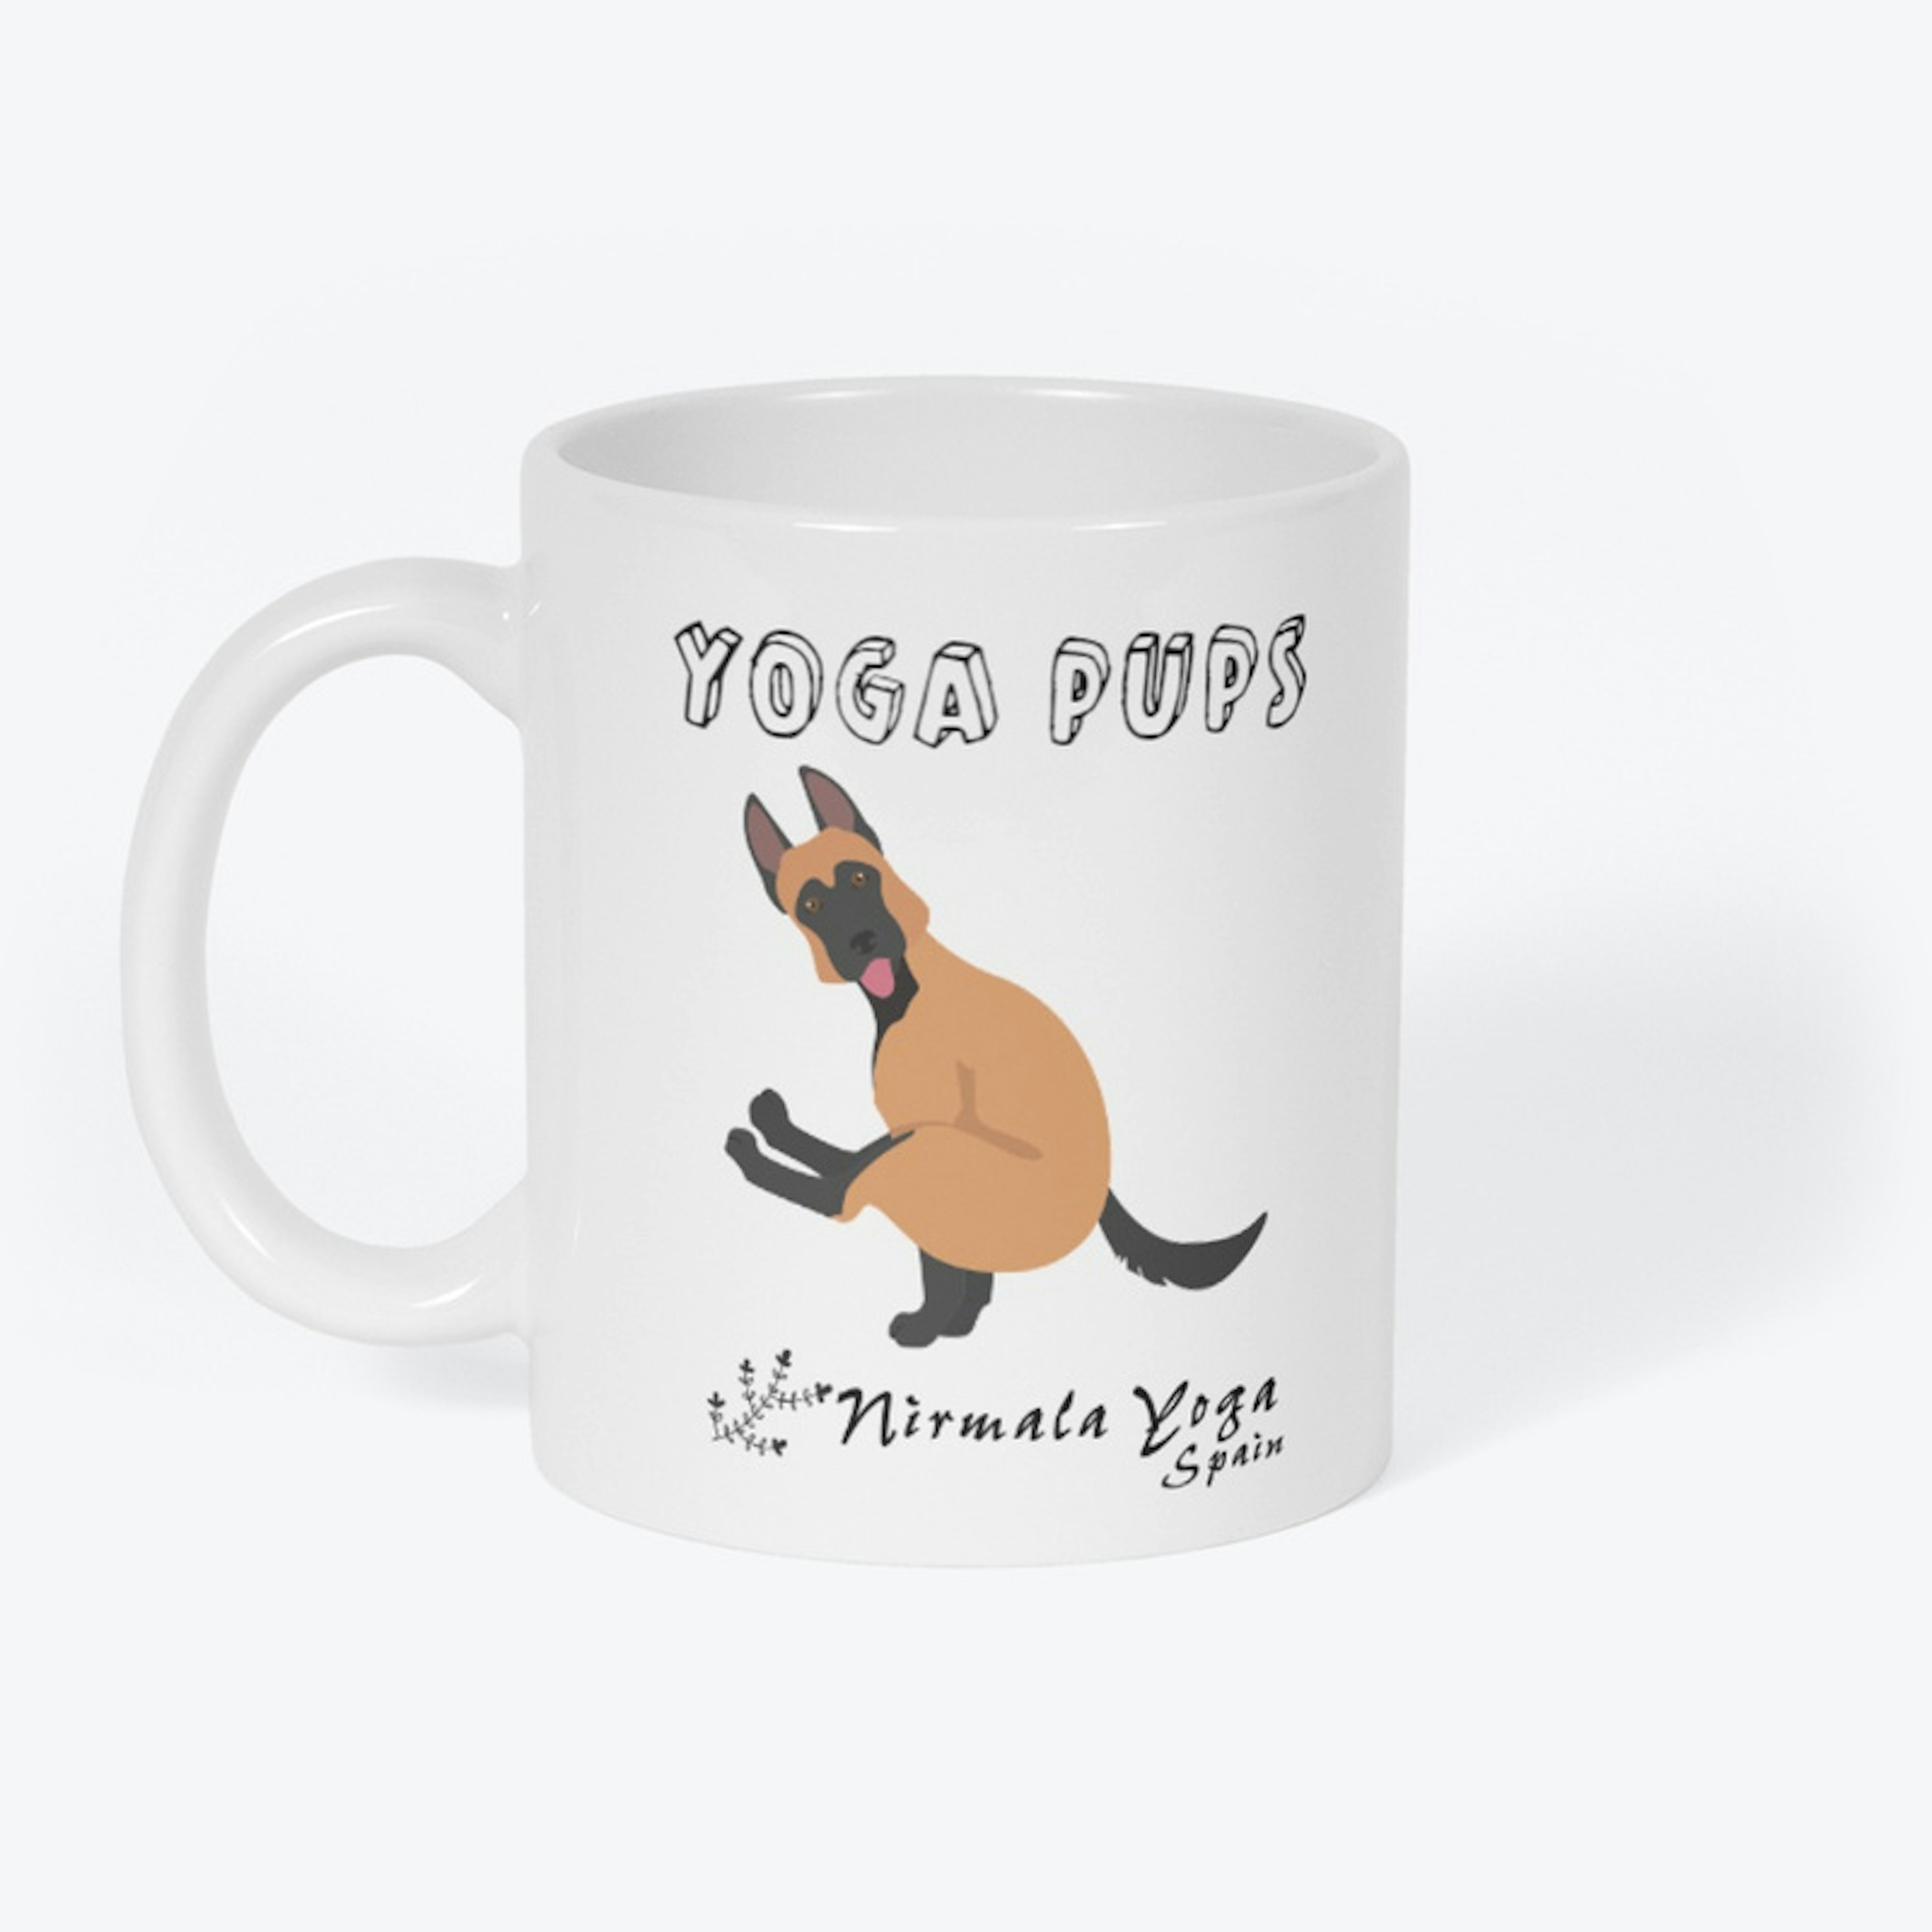 German Shepherd "Yoga Pups" Mug